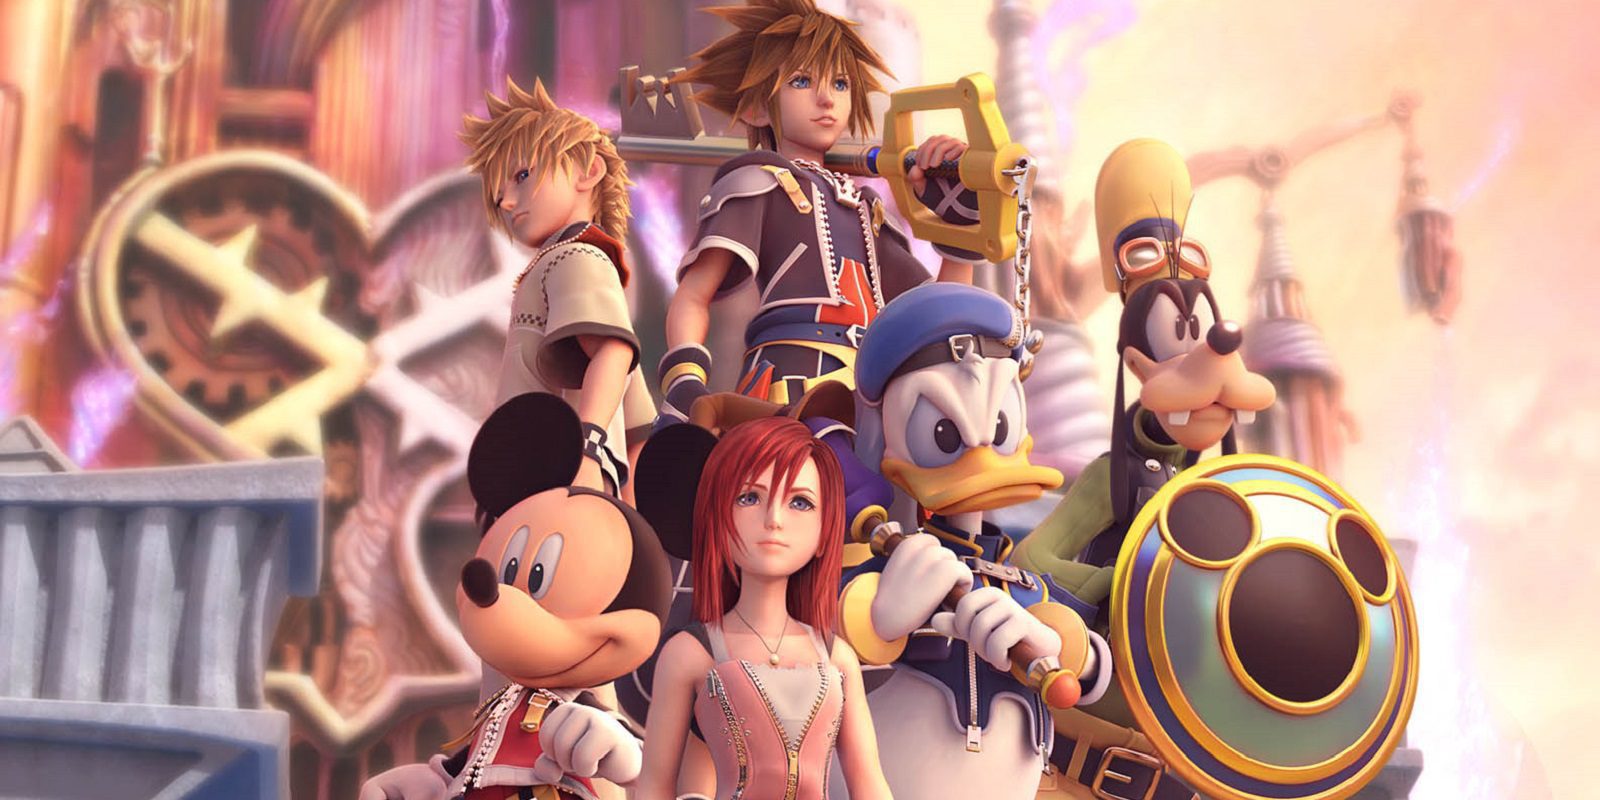 10 años sin noticias de 'Kingdom Hearts' - La Zona